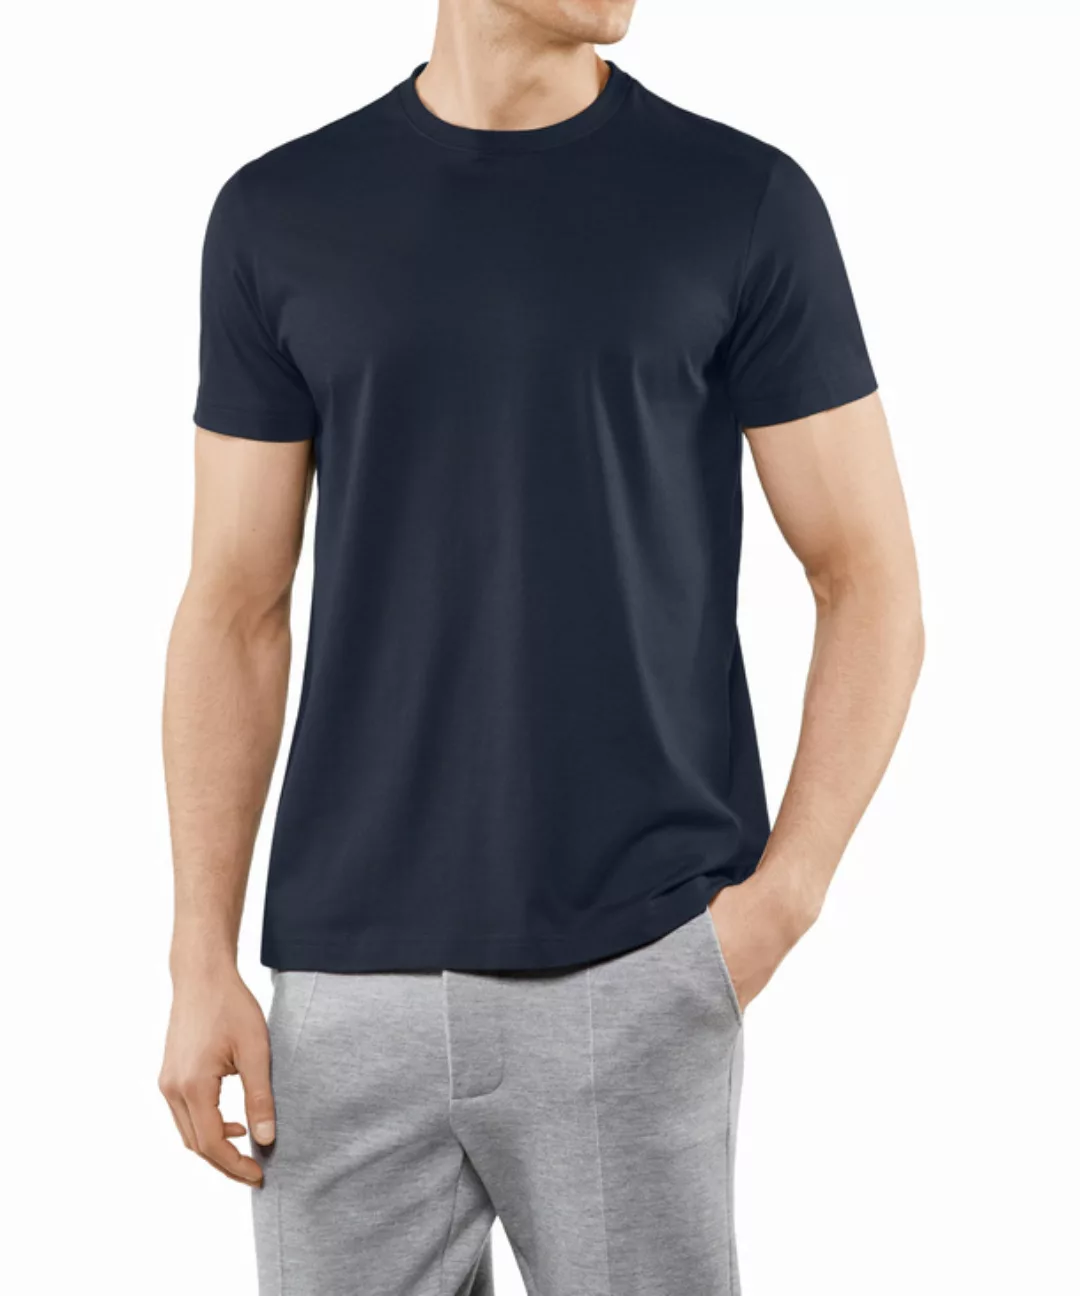 FALKE Herren T-Shirt Rundhals, Polo, M, Blau, Uni,Struktur, Baumwolle, 6210 günstig online kaufen